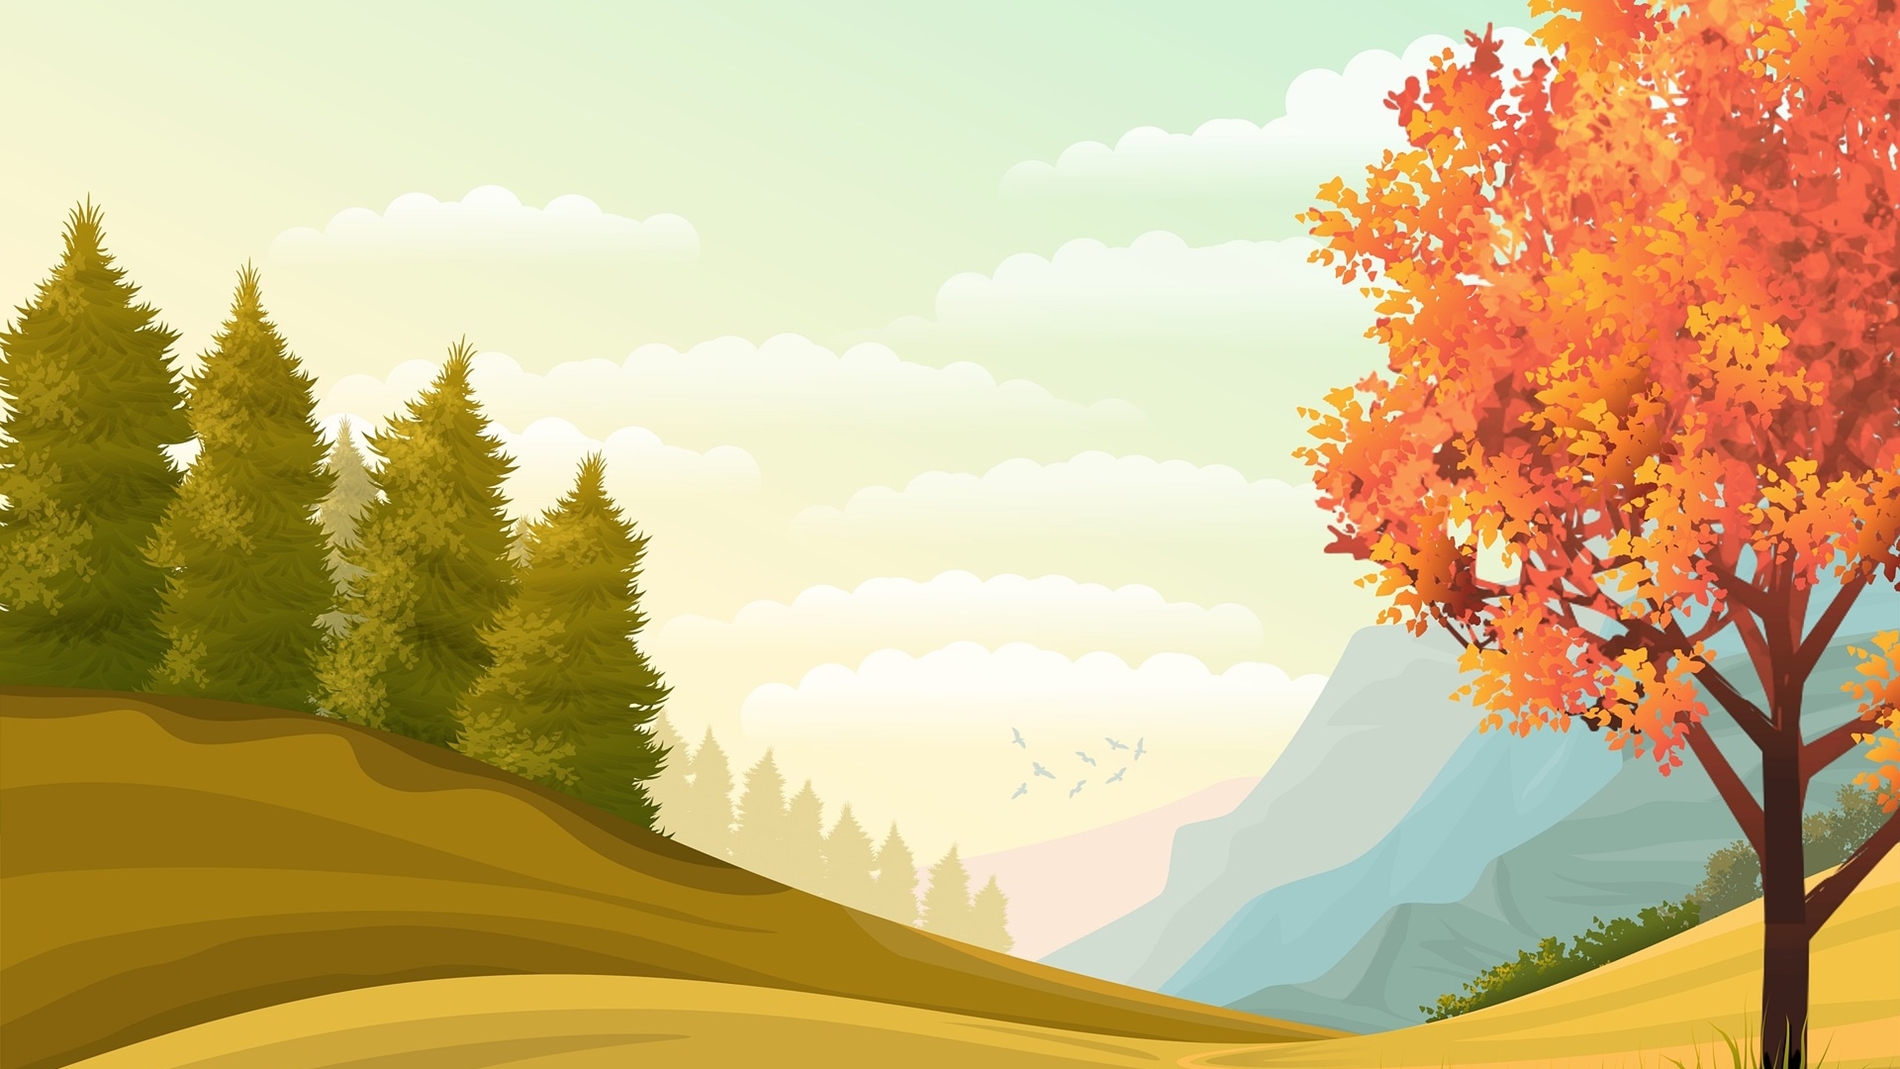 가을 풍경 사진 모음 및 가을 그림 나뭇잎 낙엽 도안자료